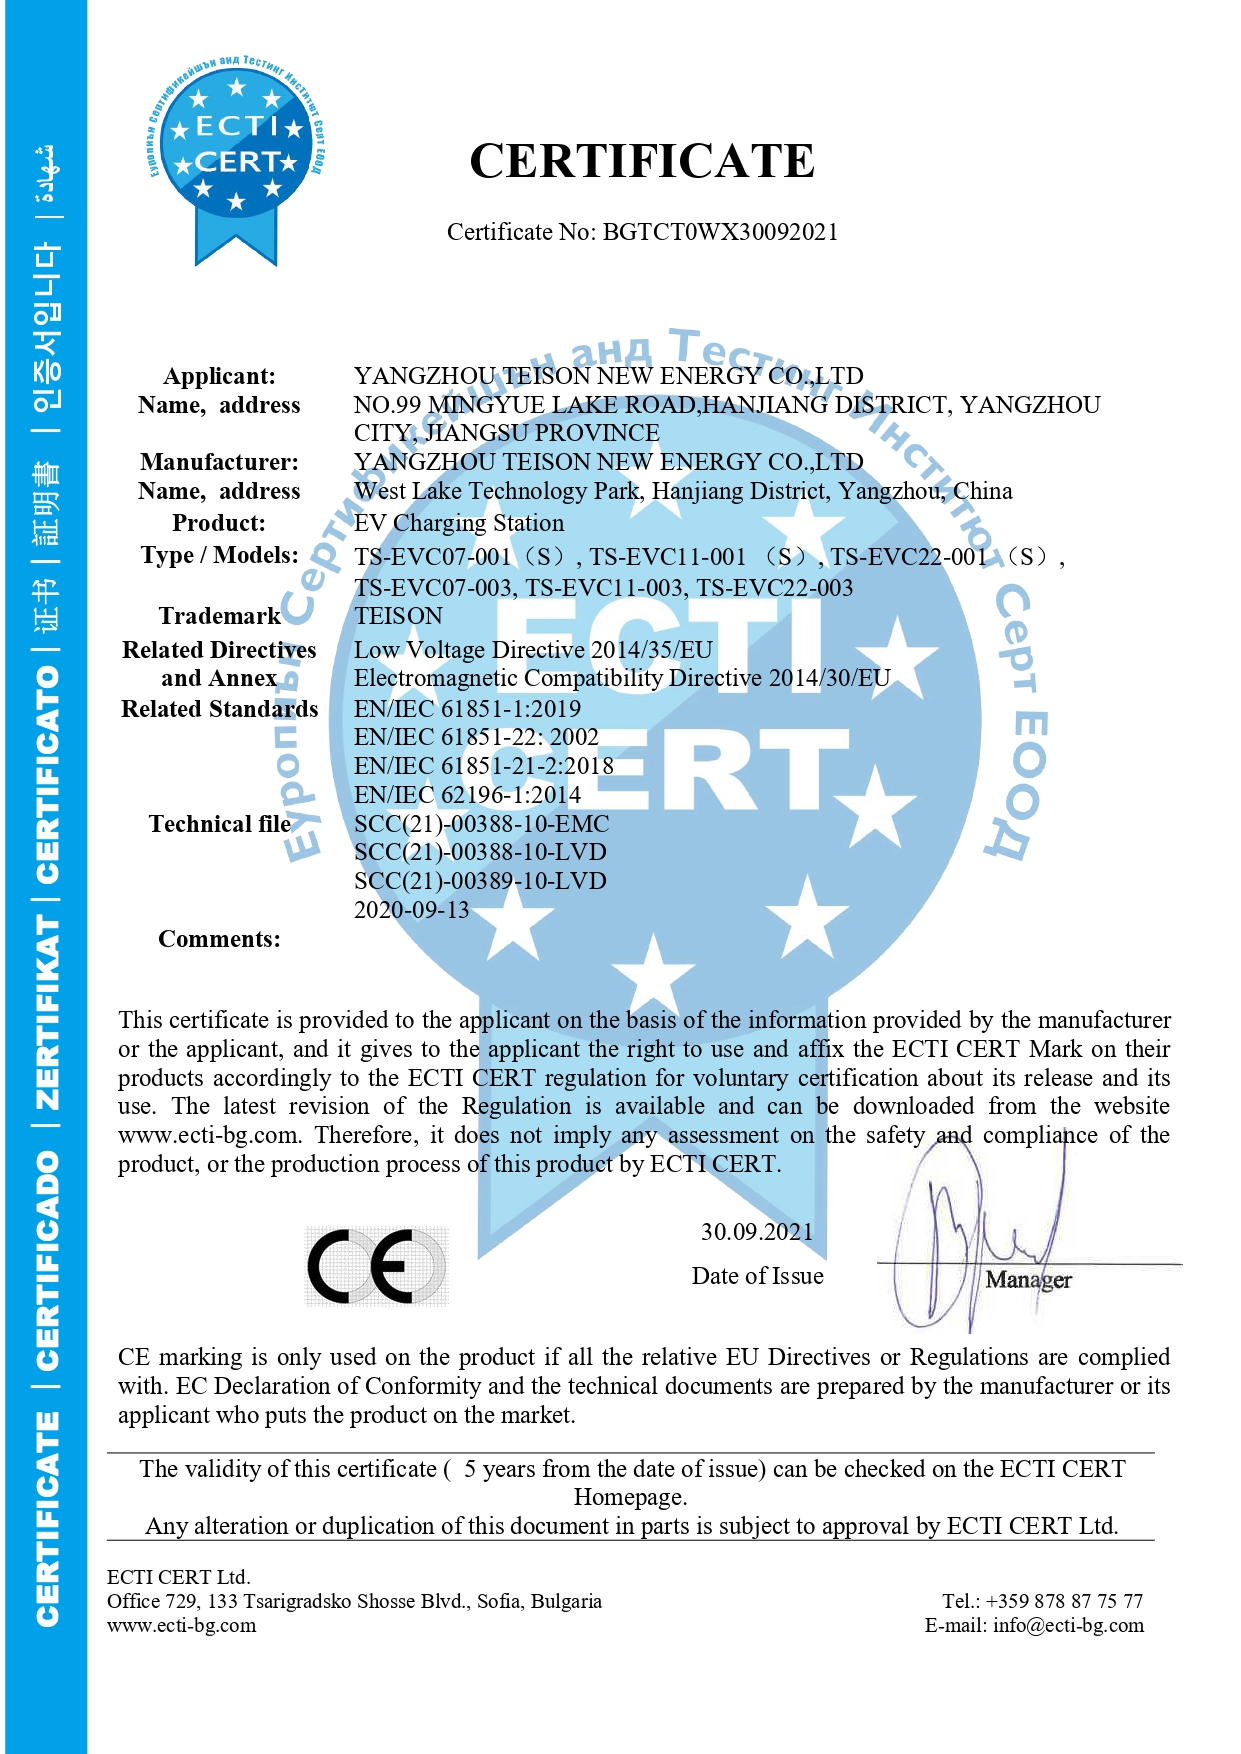 Smart Mini CE certificate